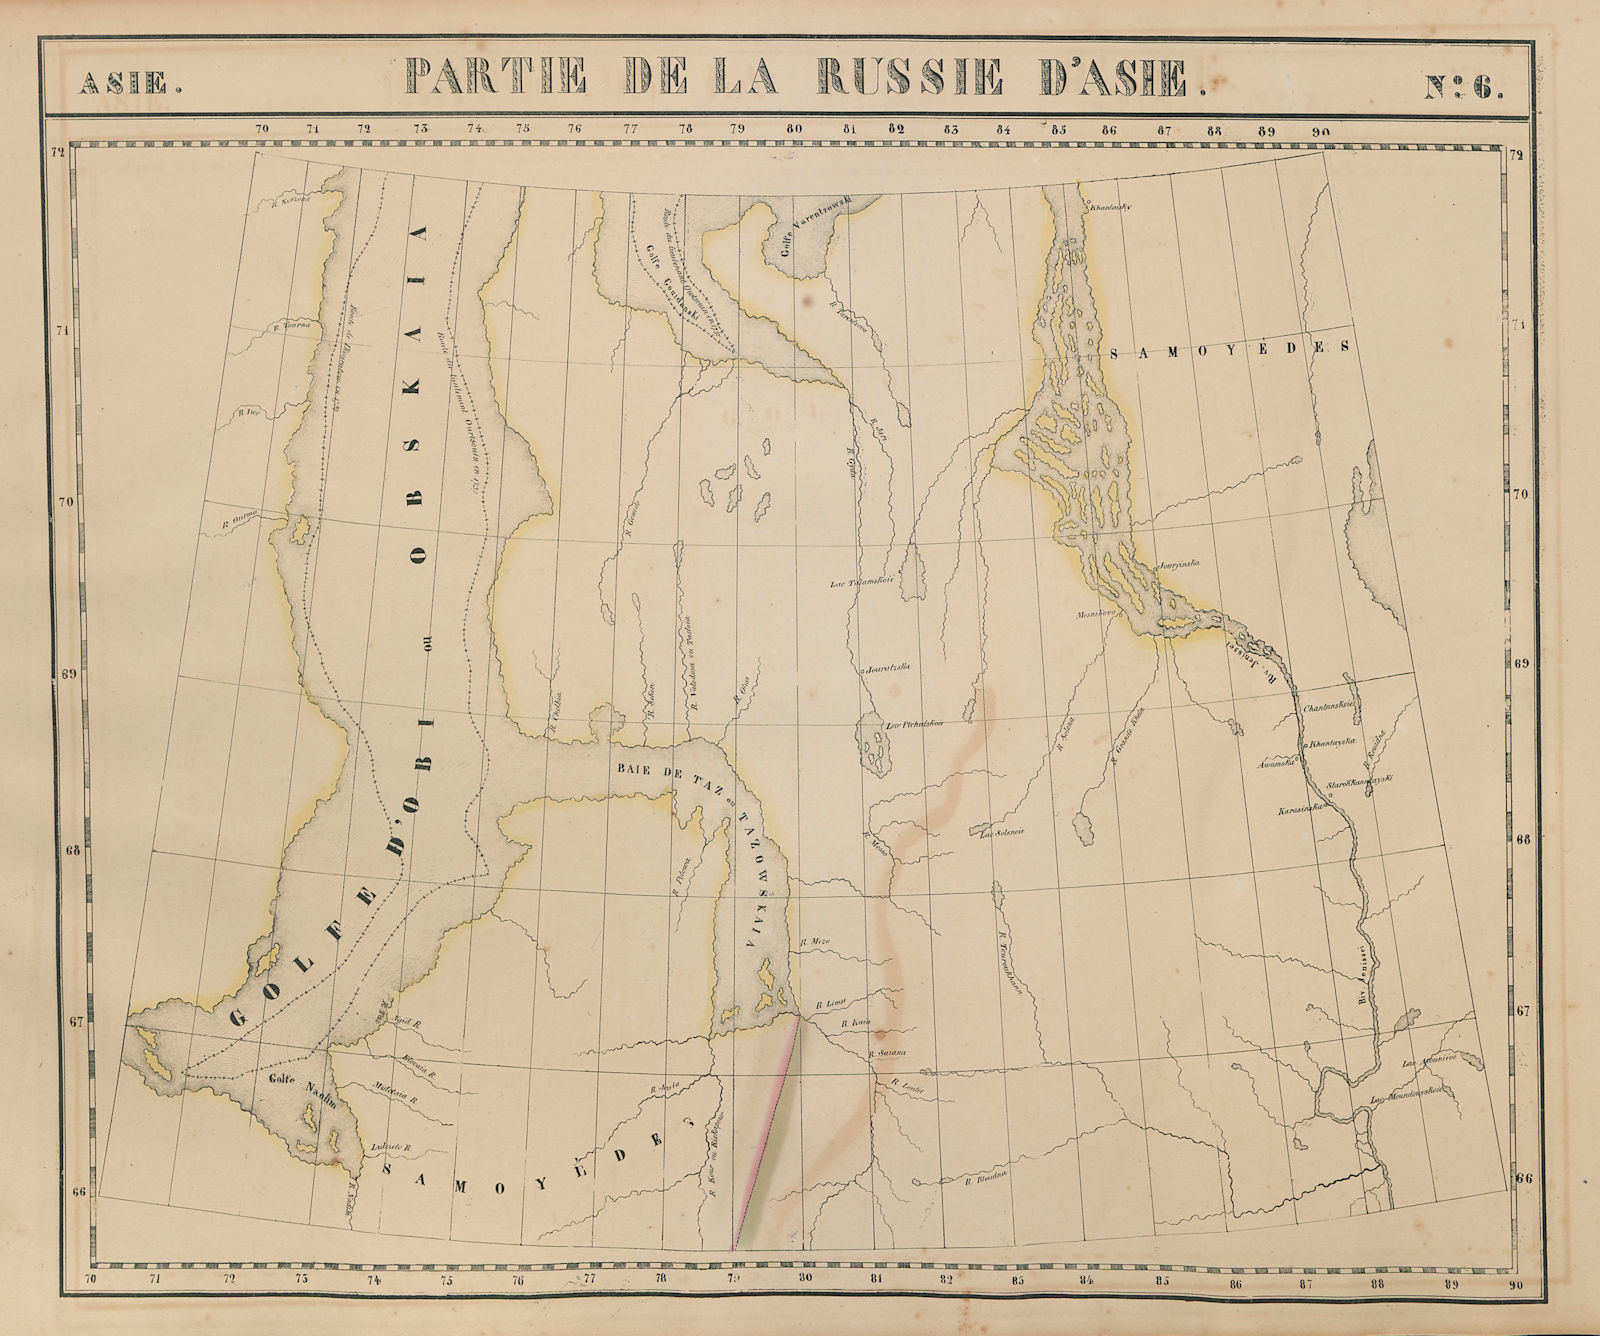 Russie d'Asie #6 Russia Yamalia Gulf of Ob Yenisei River VANDERMAELEN 1827 map